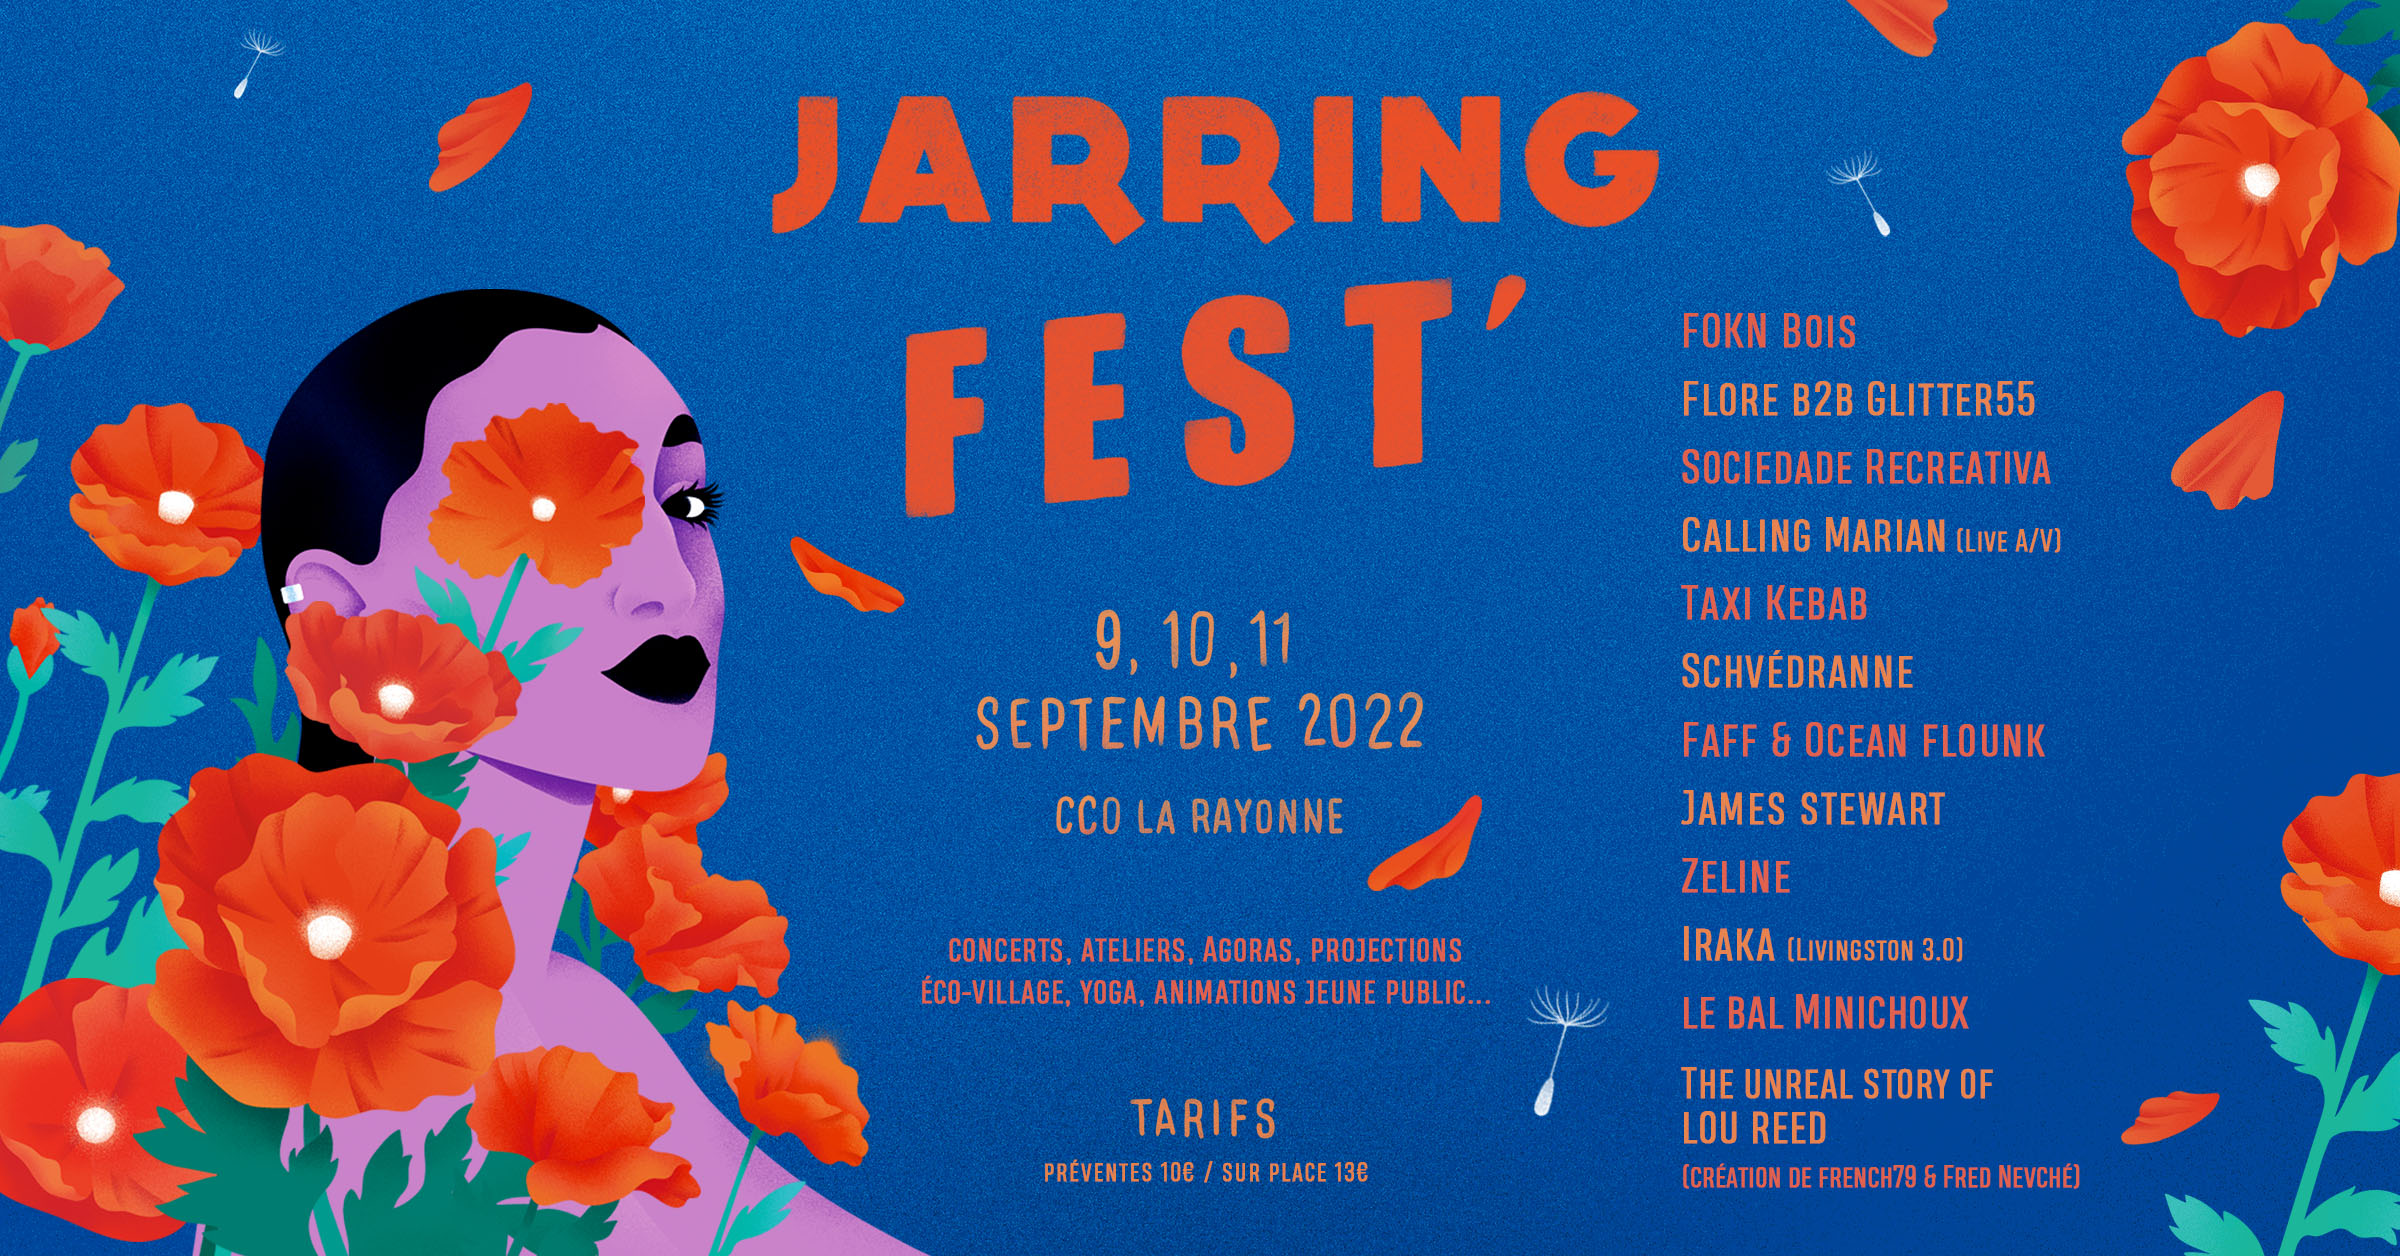 Jarring Fest' 2022, Cco la rayonne, festival de musique, lyon